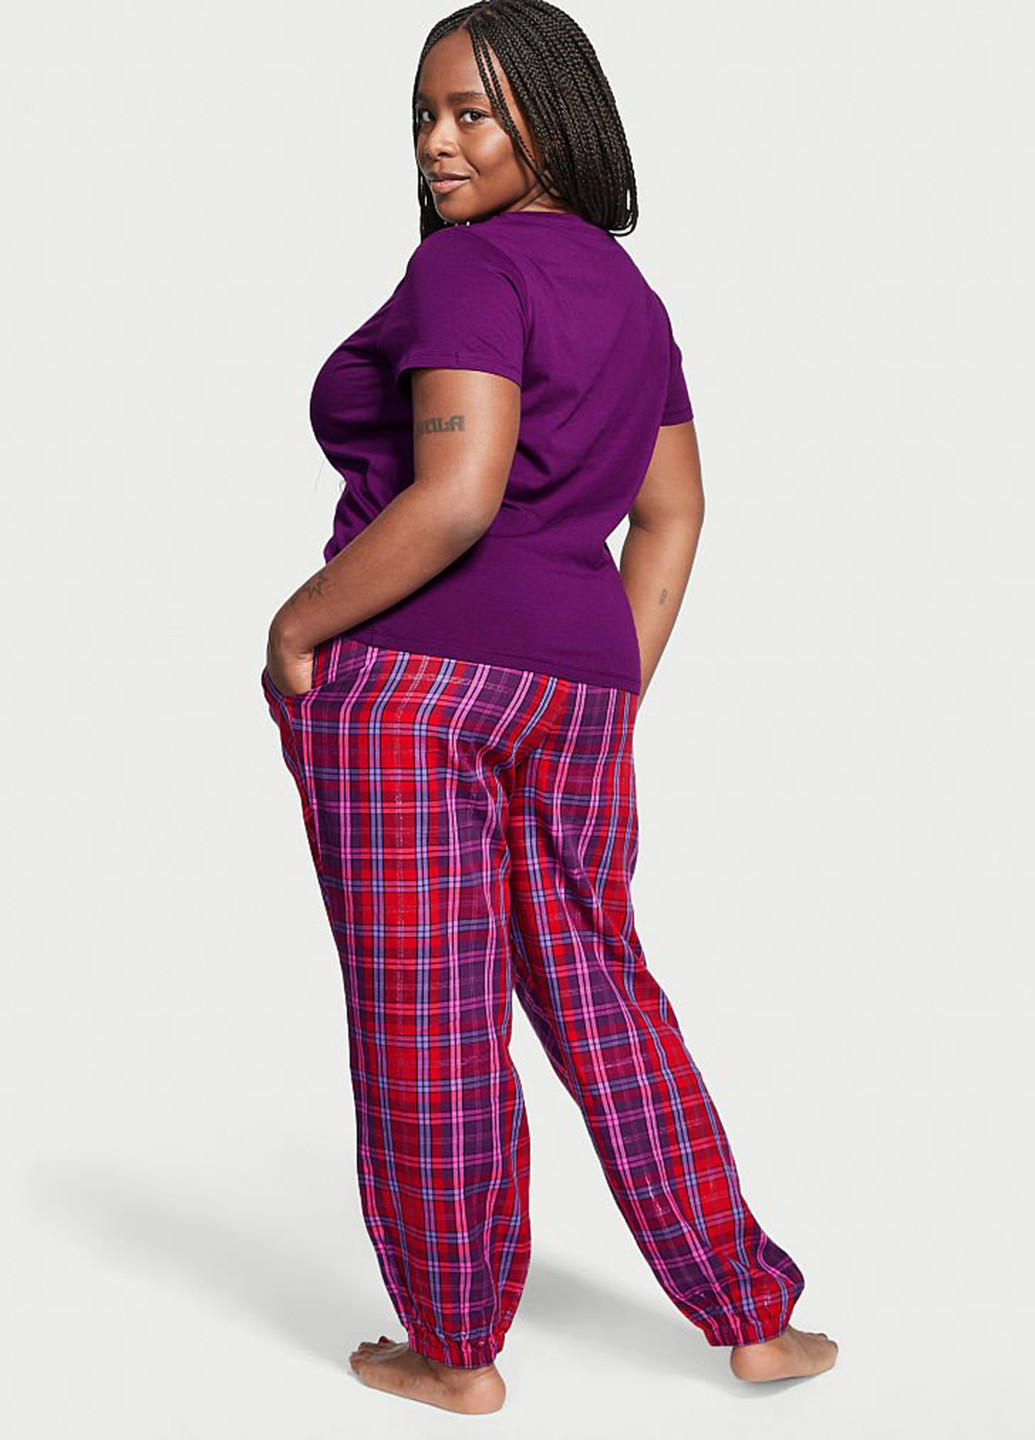 Фіолетова всесезон піжама (футболка, штани) футболка + штани Victoria's Secret